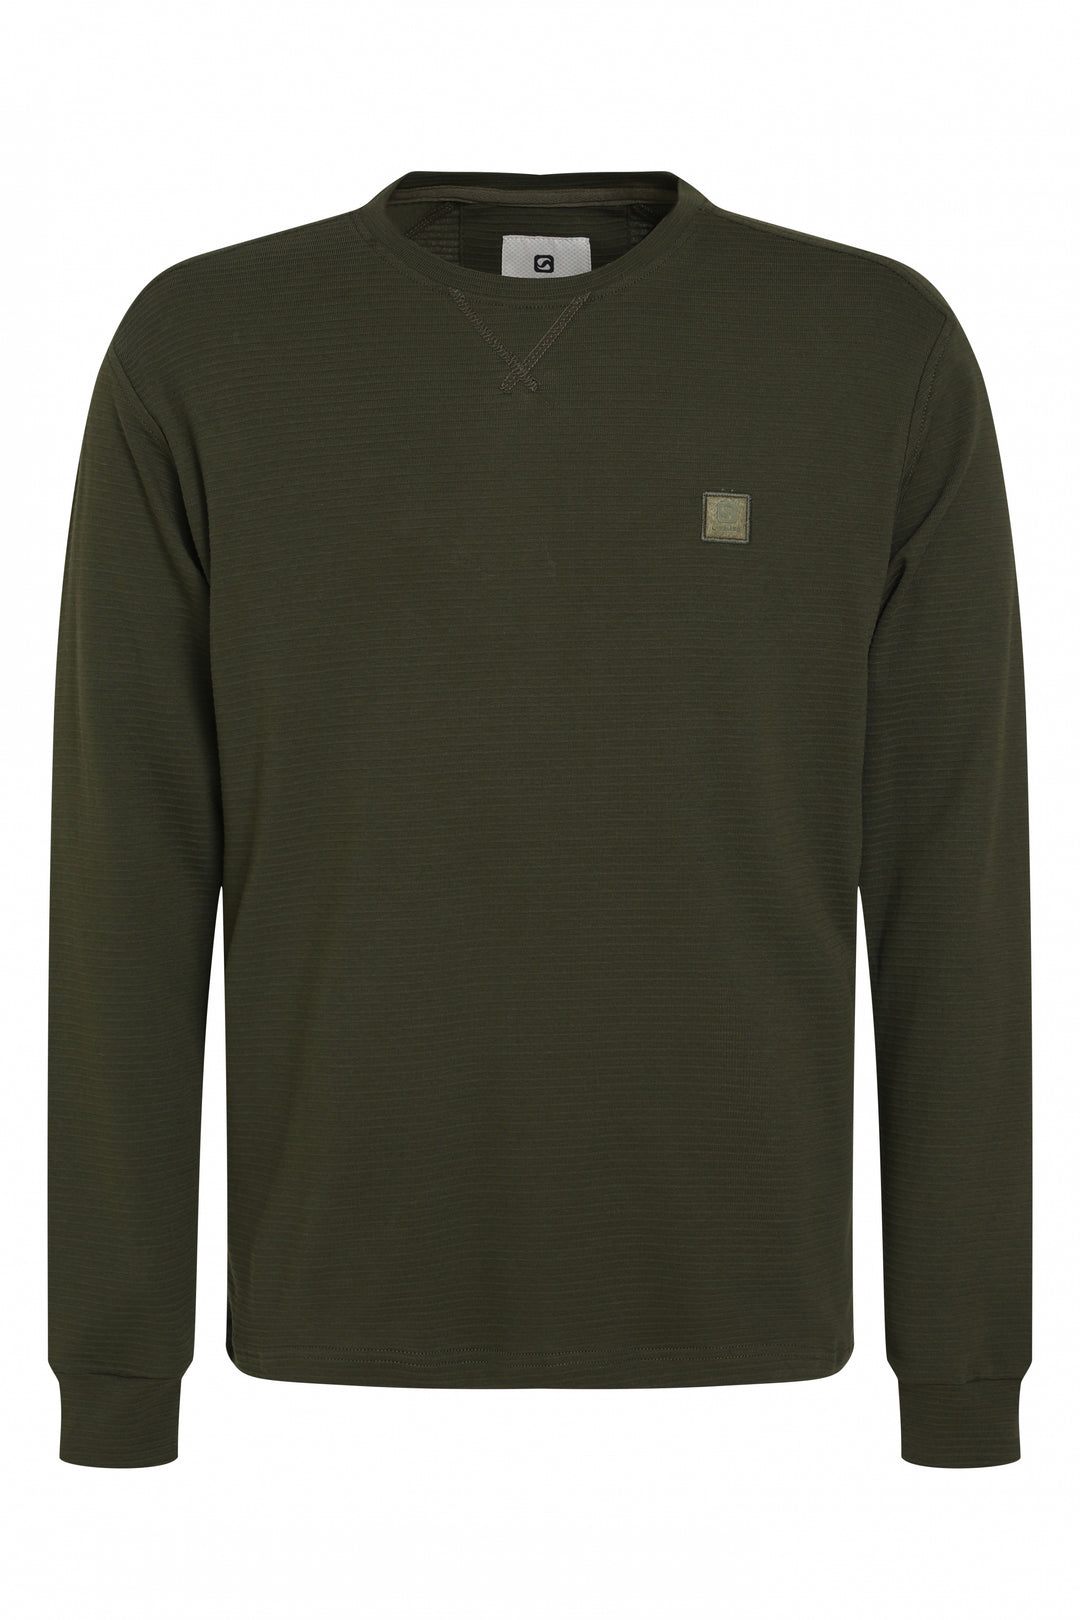 Gabbiano - Heren Shirt - 153716 - 502 Army